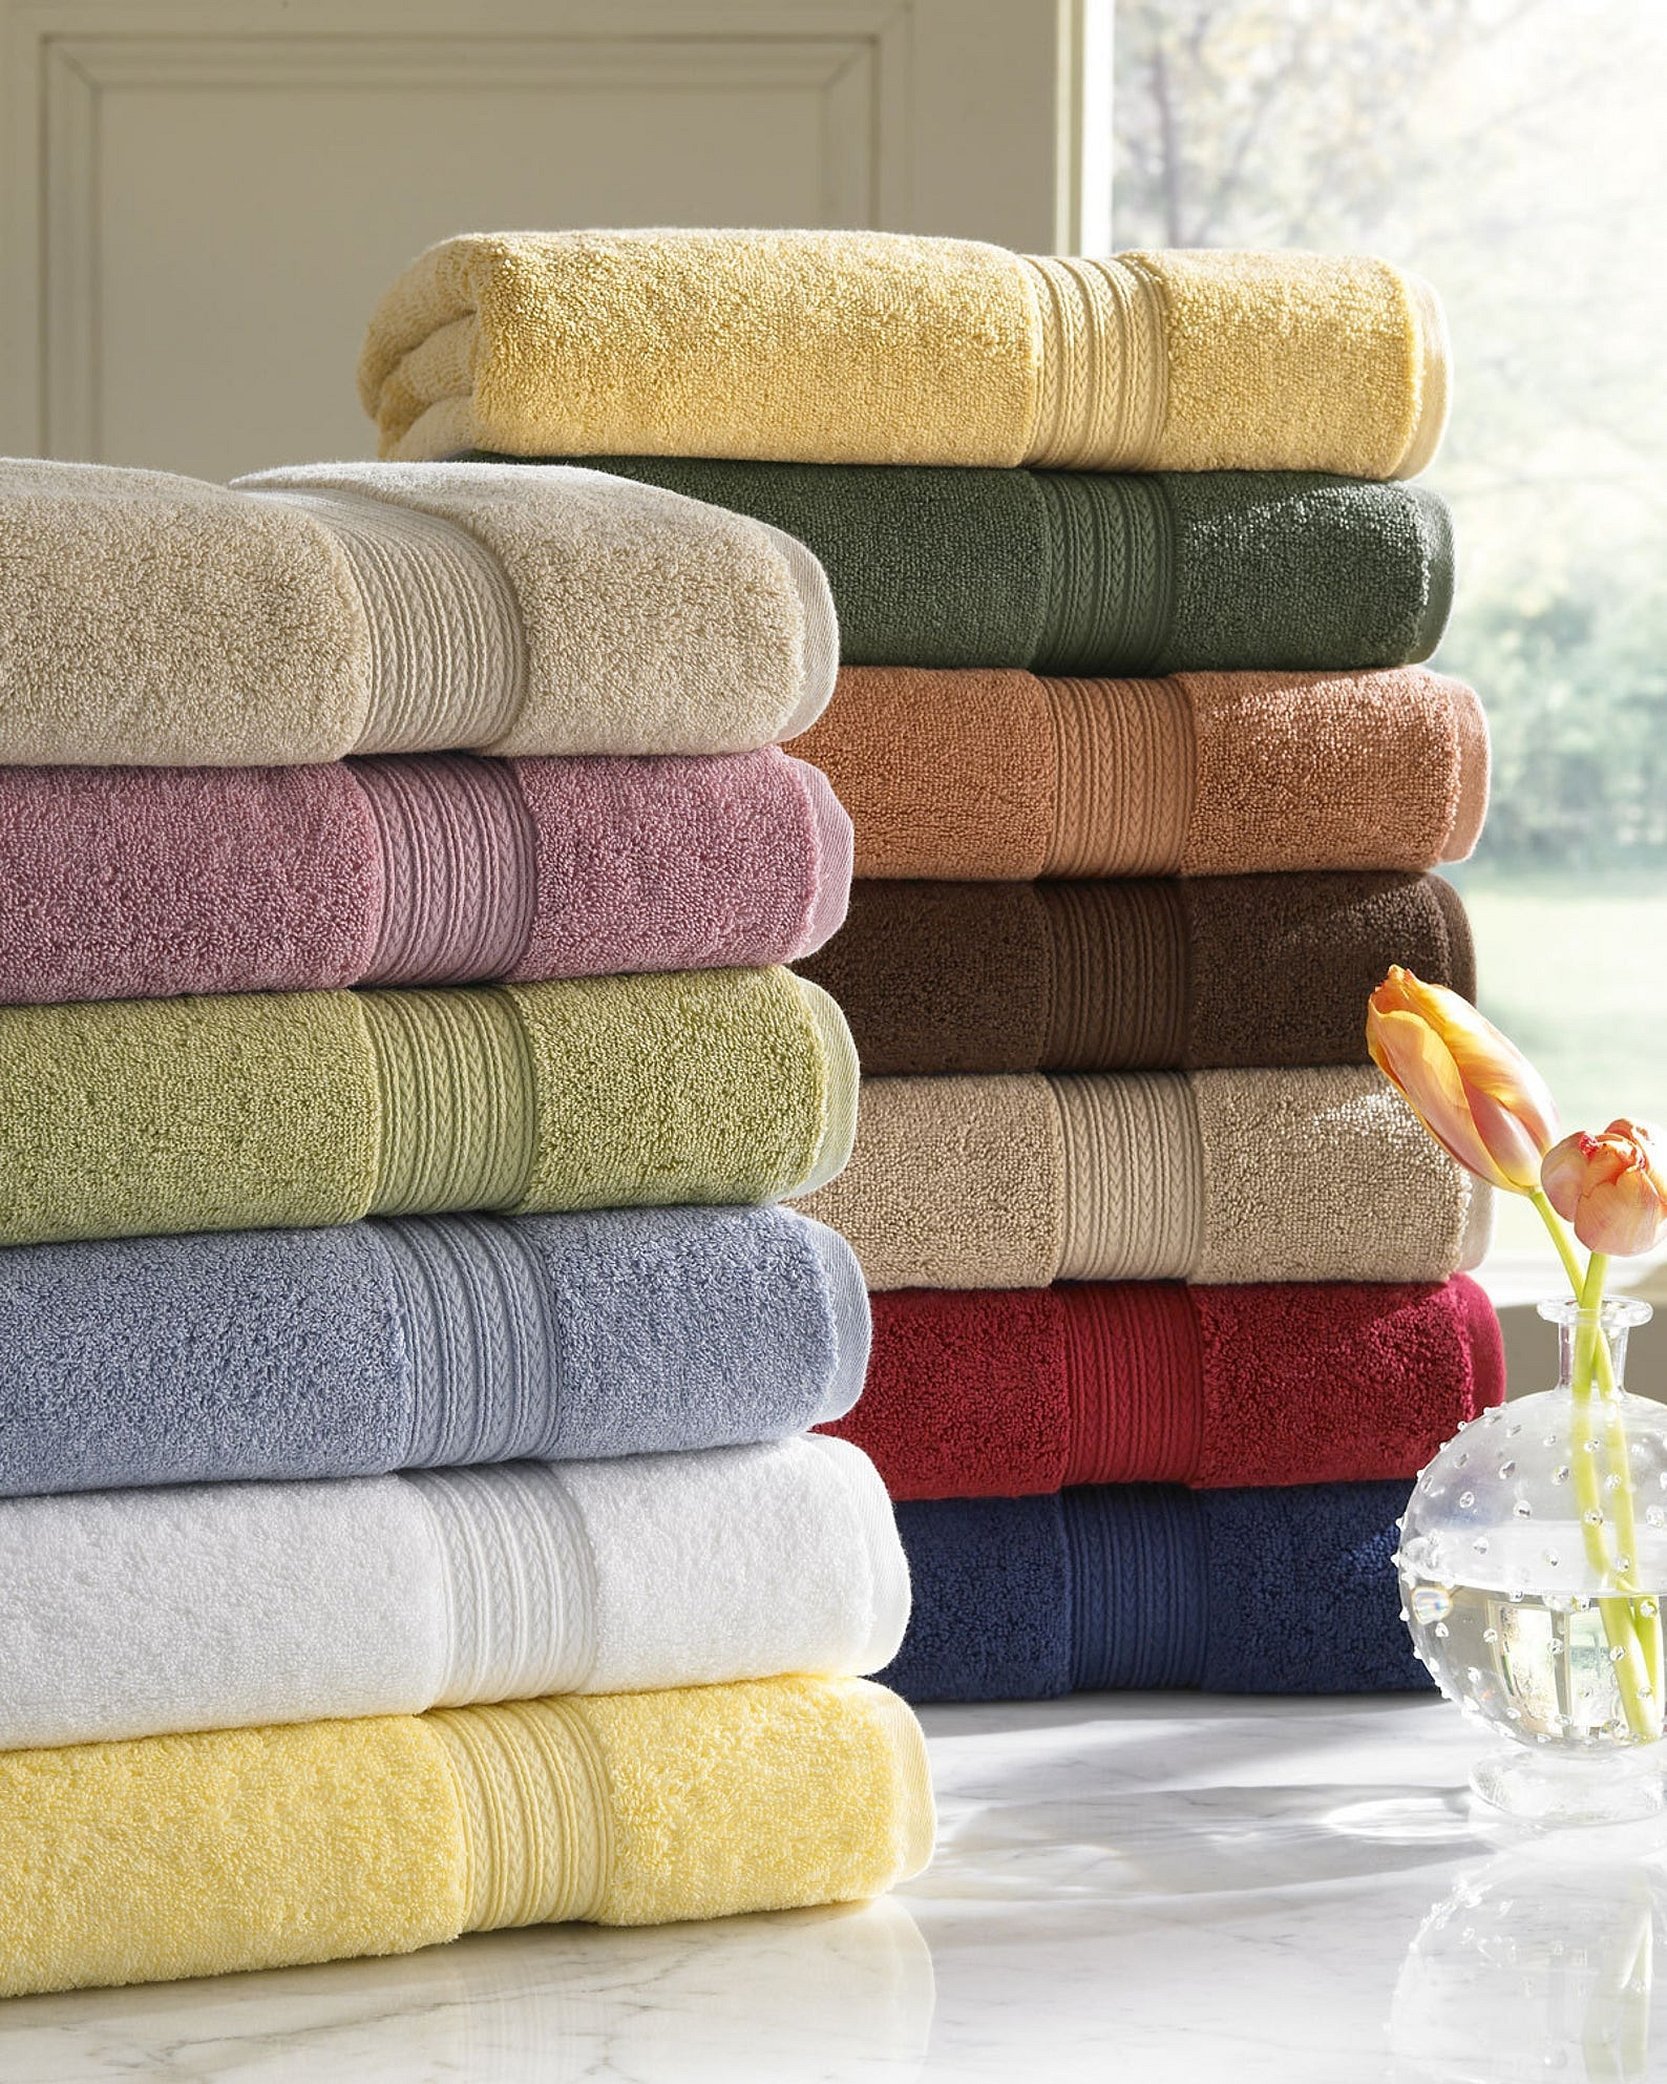 Textile полотенце. Цветные полотенца. Стопка полотенец. Полотенца махровые в интерьере. Мягкое полотенце круглое.